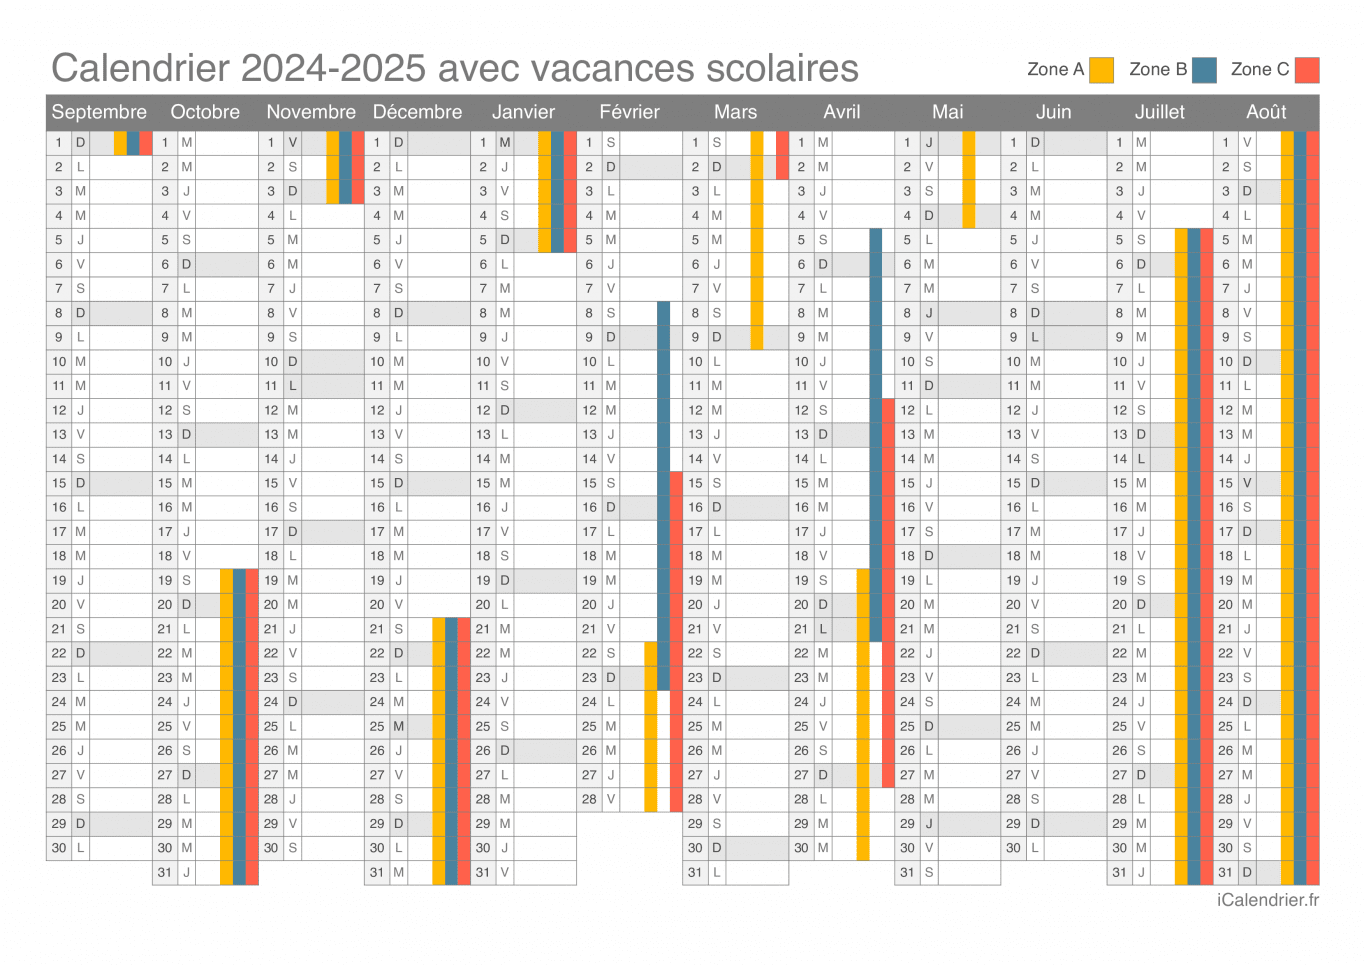 Calendrier des vacances scolaires 2024-2025